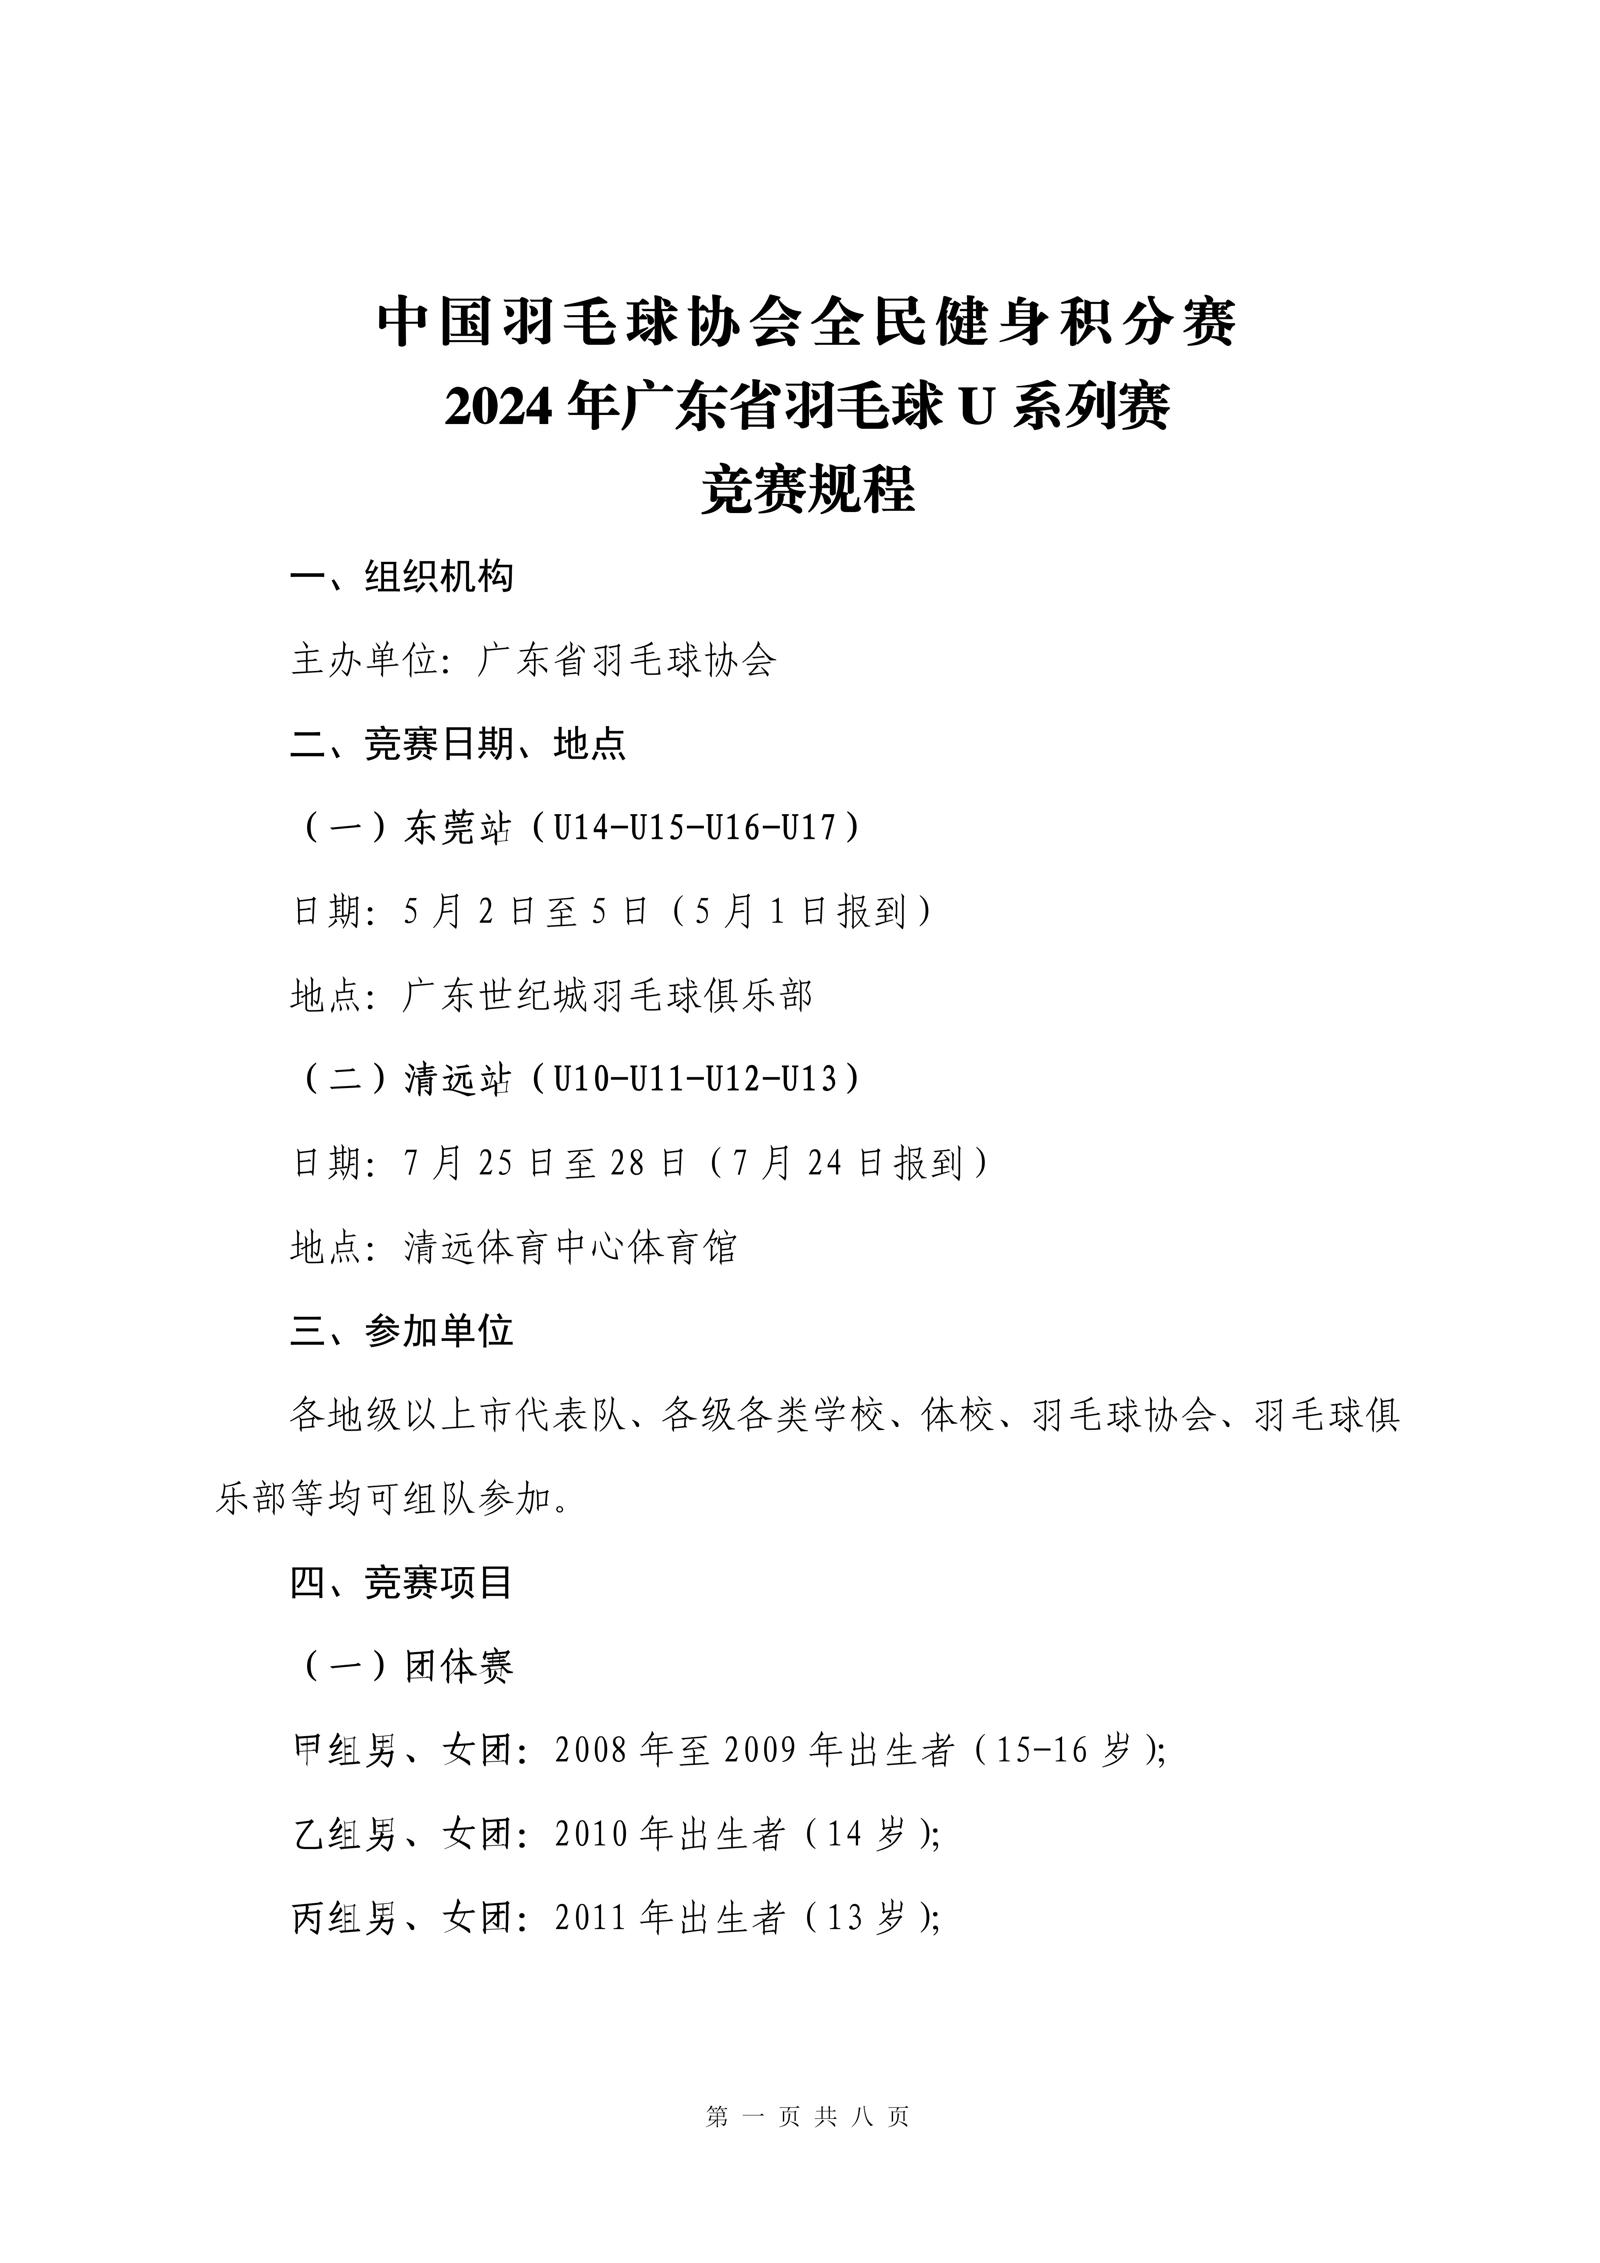 2024年广东省羽毛球U系列赛竞赛规程-0329-1_01